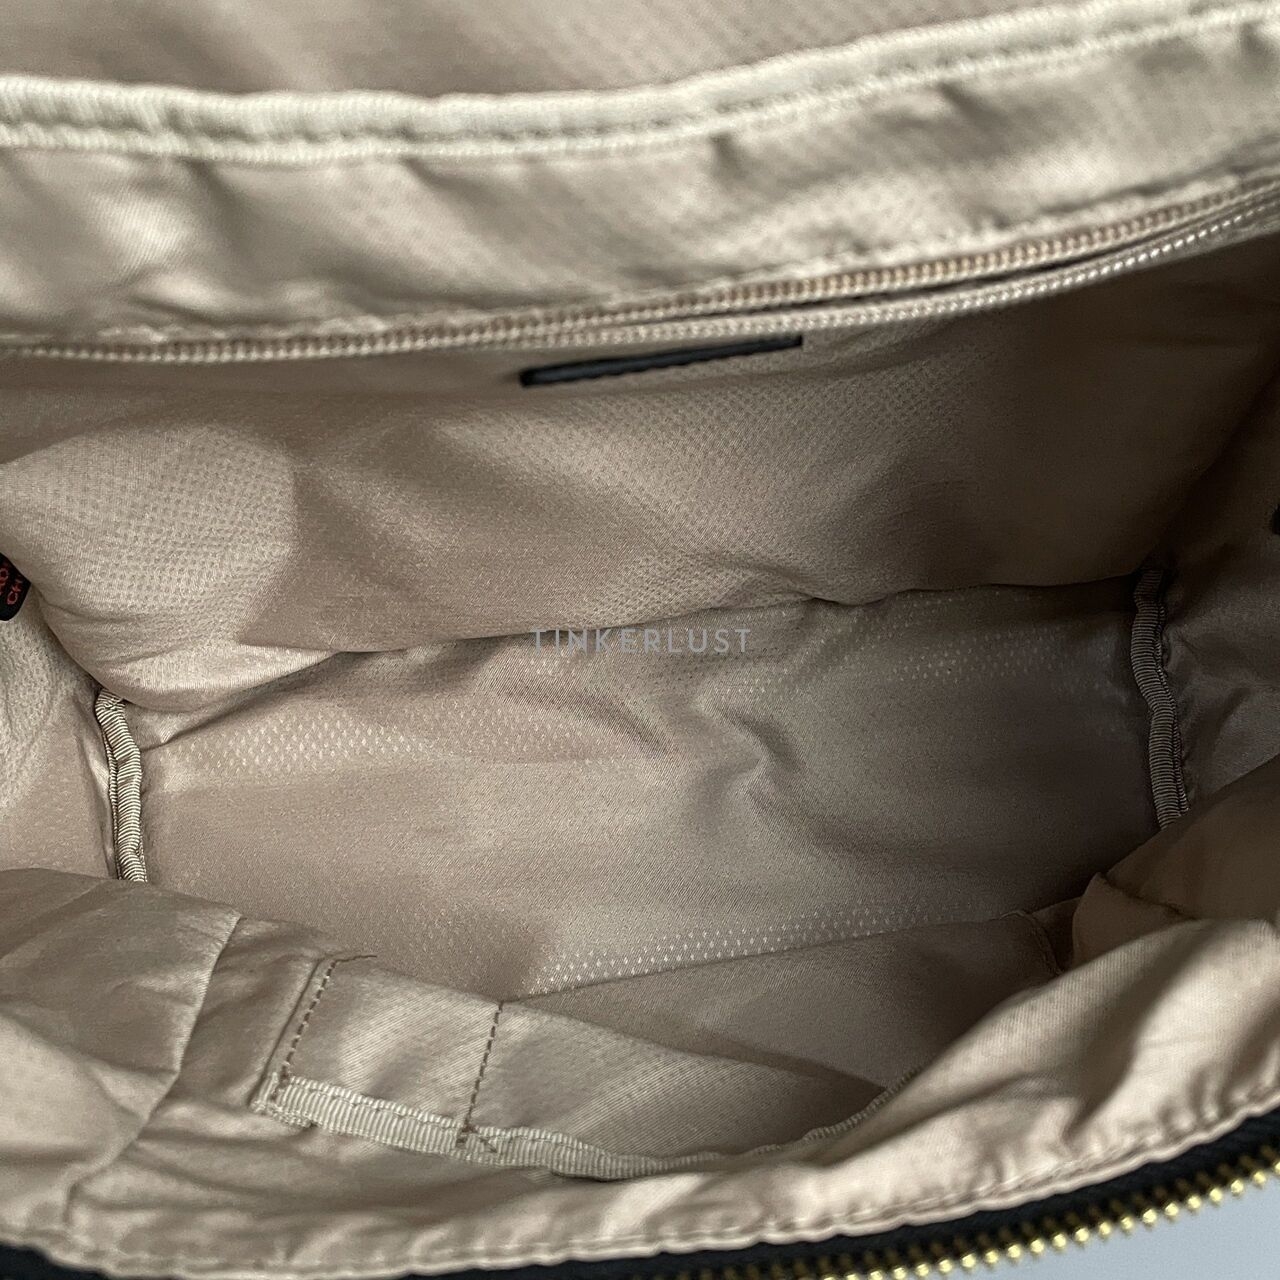 Tumi Alexa Black Nylon Backpack